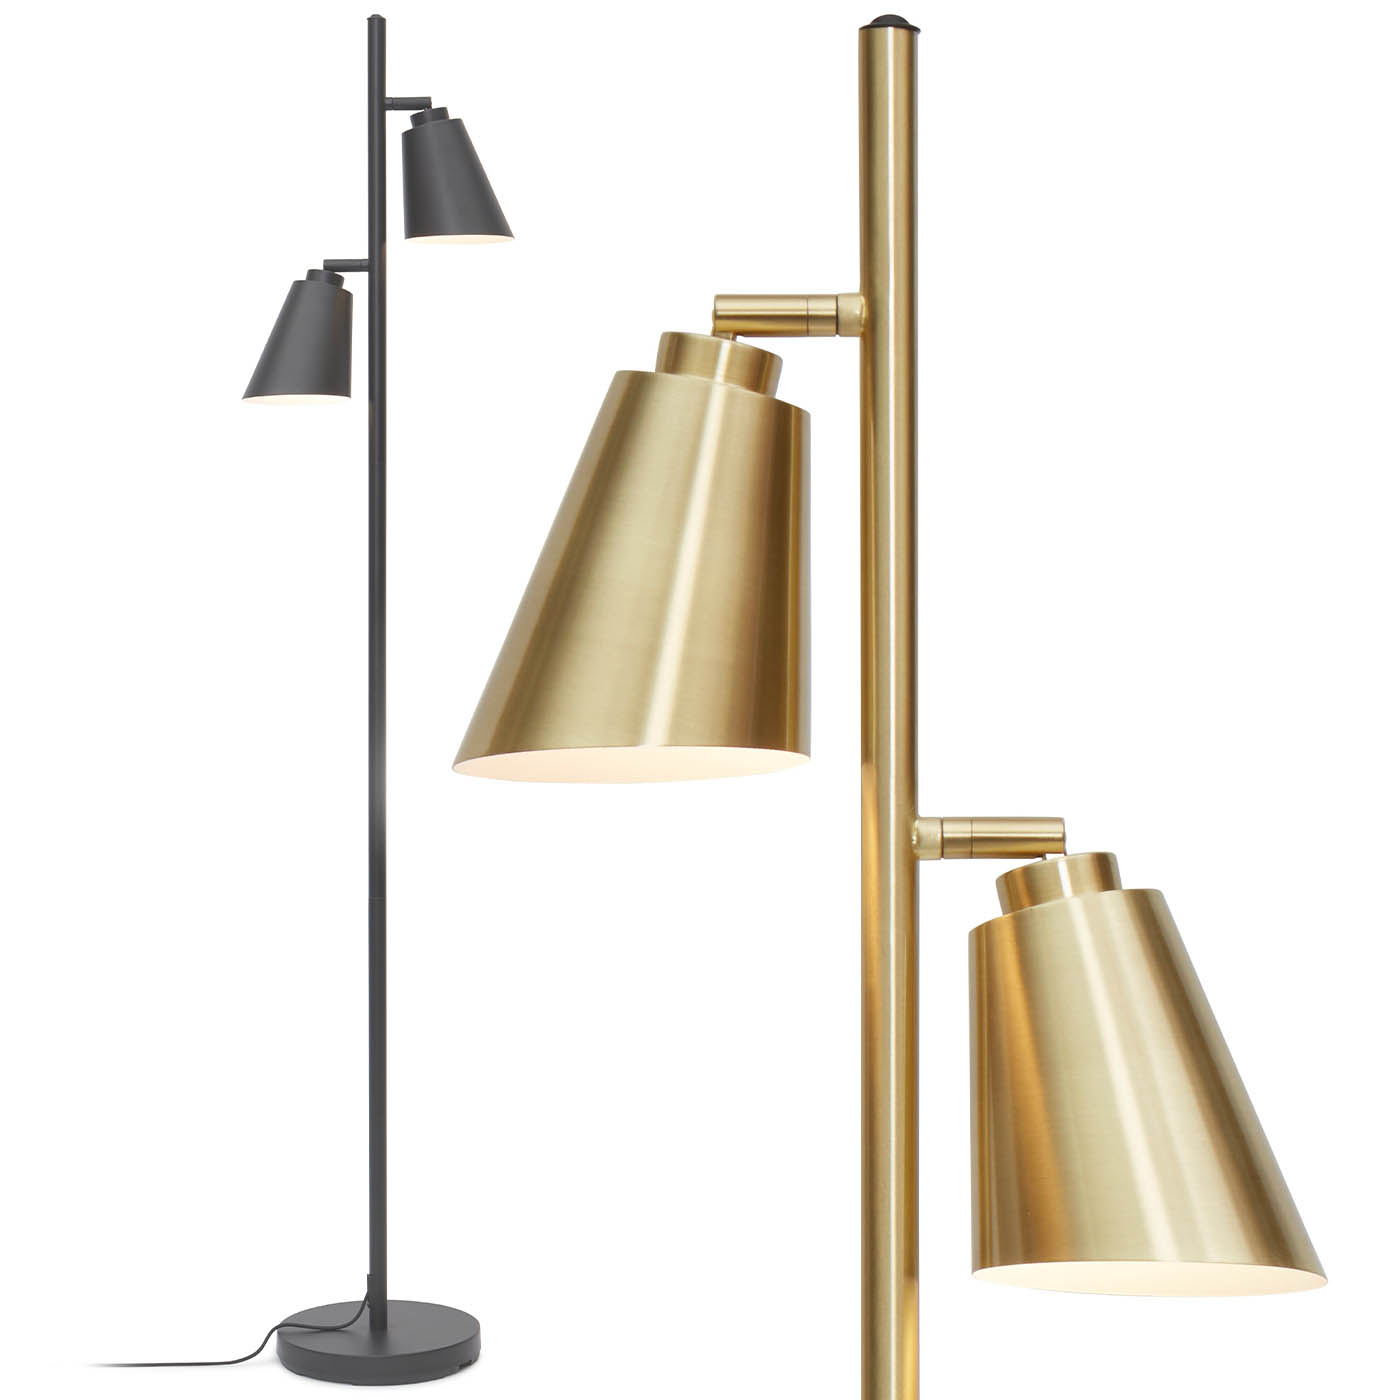 Elegante, zweiflammige Stehlampe BRE-F, schwarz oder gold: Klassisch-moderne Stehlampe mit zwei konischen Schirmen